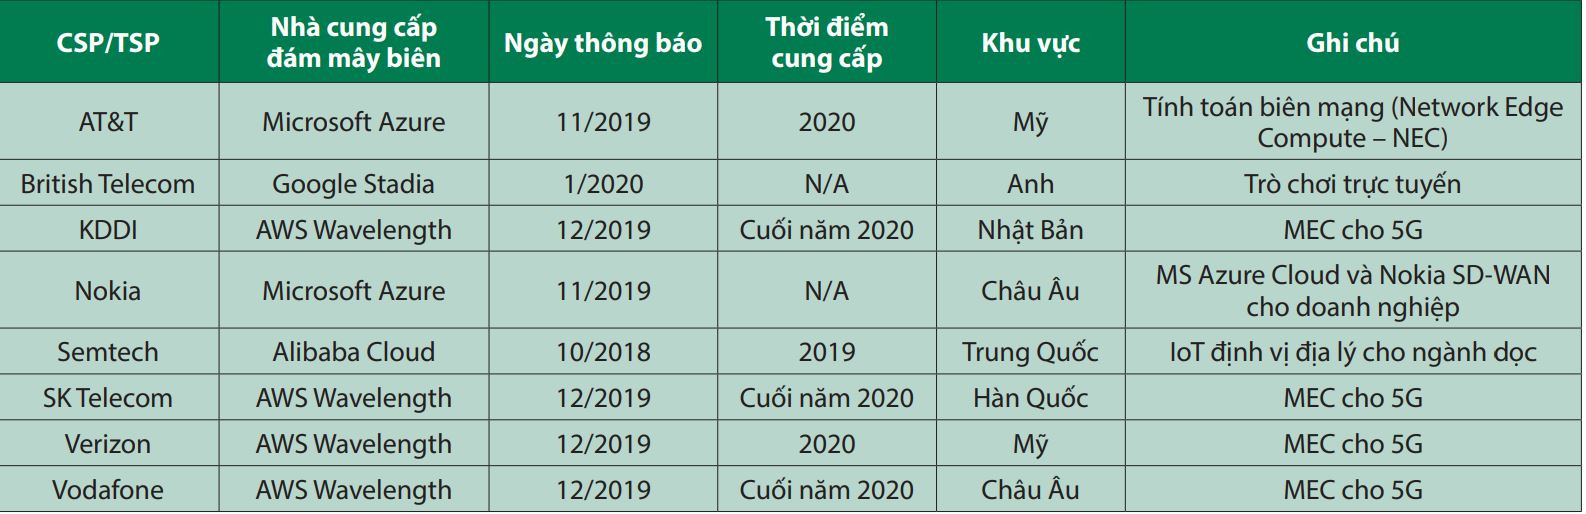 Triển khai MEC cho mạng 5G tại Việt Nam: Ứng dụng và giải pháp - Ảnh 3.